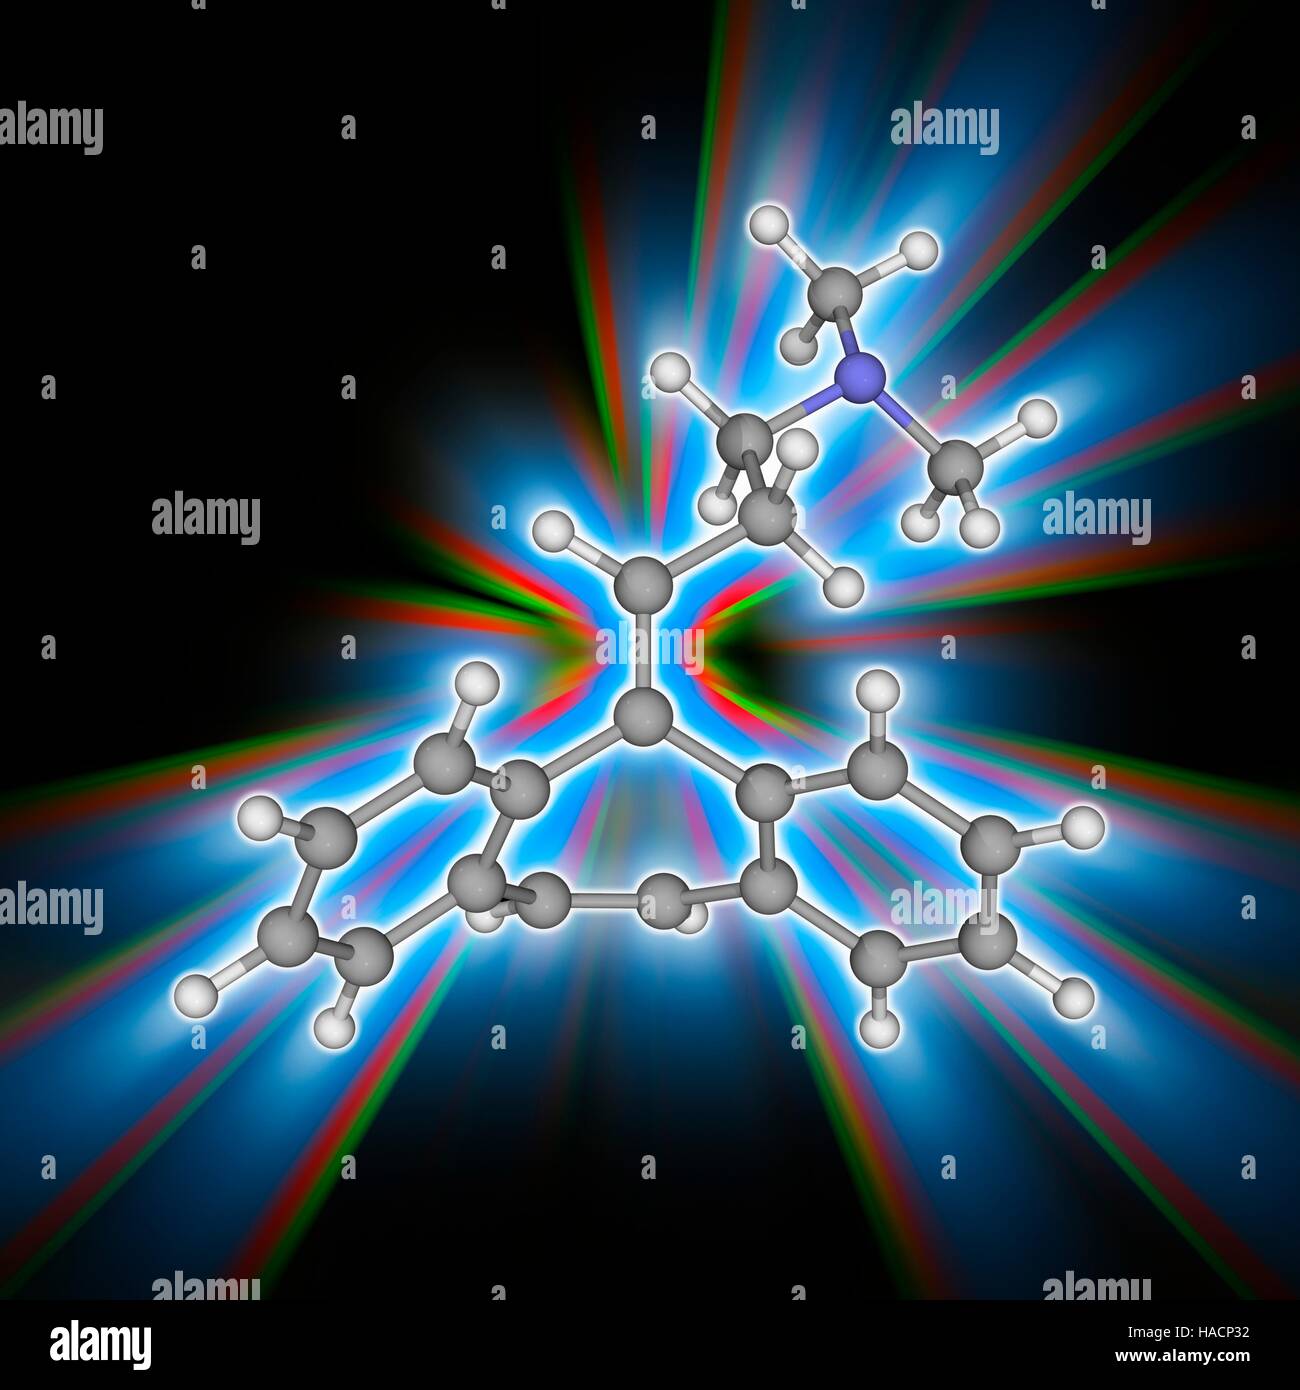 Cyclobenzapyren. Molekulares Modell des Muskel entspannende Droge Cyclobenzapyren (C20. H21. (N), zur Behandlung von skelettartiger Muskelkrämpfe. Atome als Kugeln dargestellt werden und sind farblich gekennzeichnet: Kohlenstoff (grau), Wasserstoff (weiß) und Stickstoff (blau). Abbildung. Stockfoto